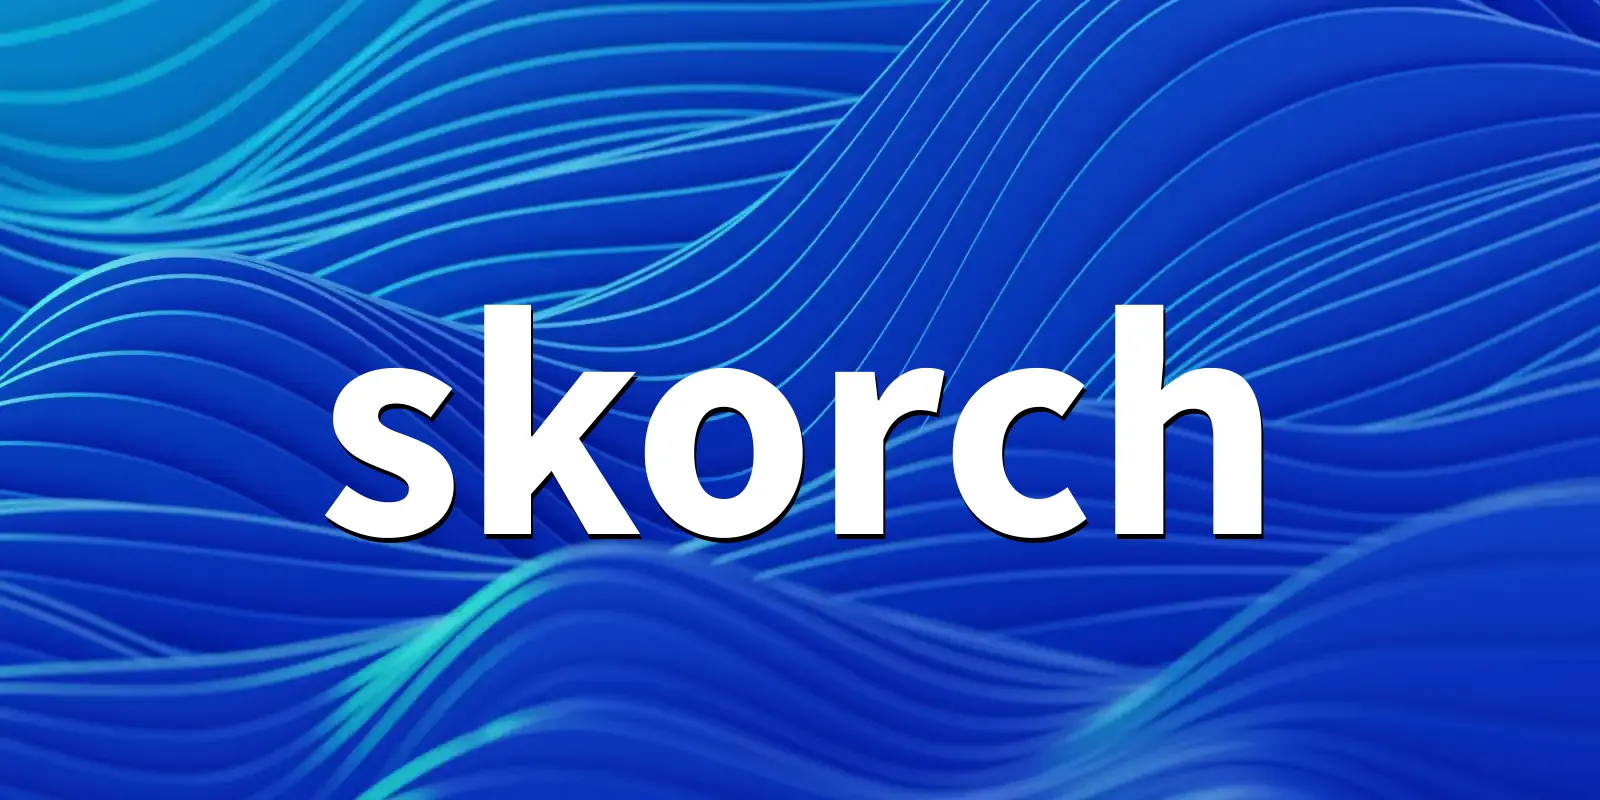 /pkg/s/skorch/skorch-banner.webp